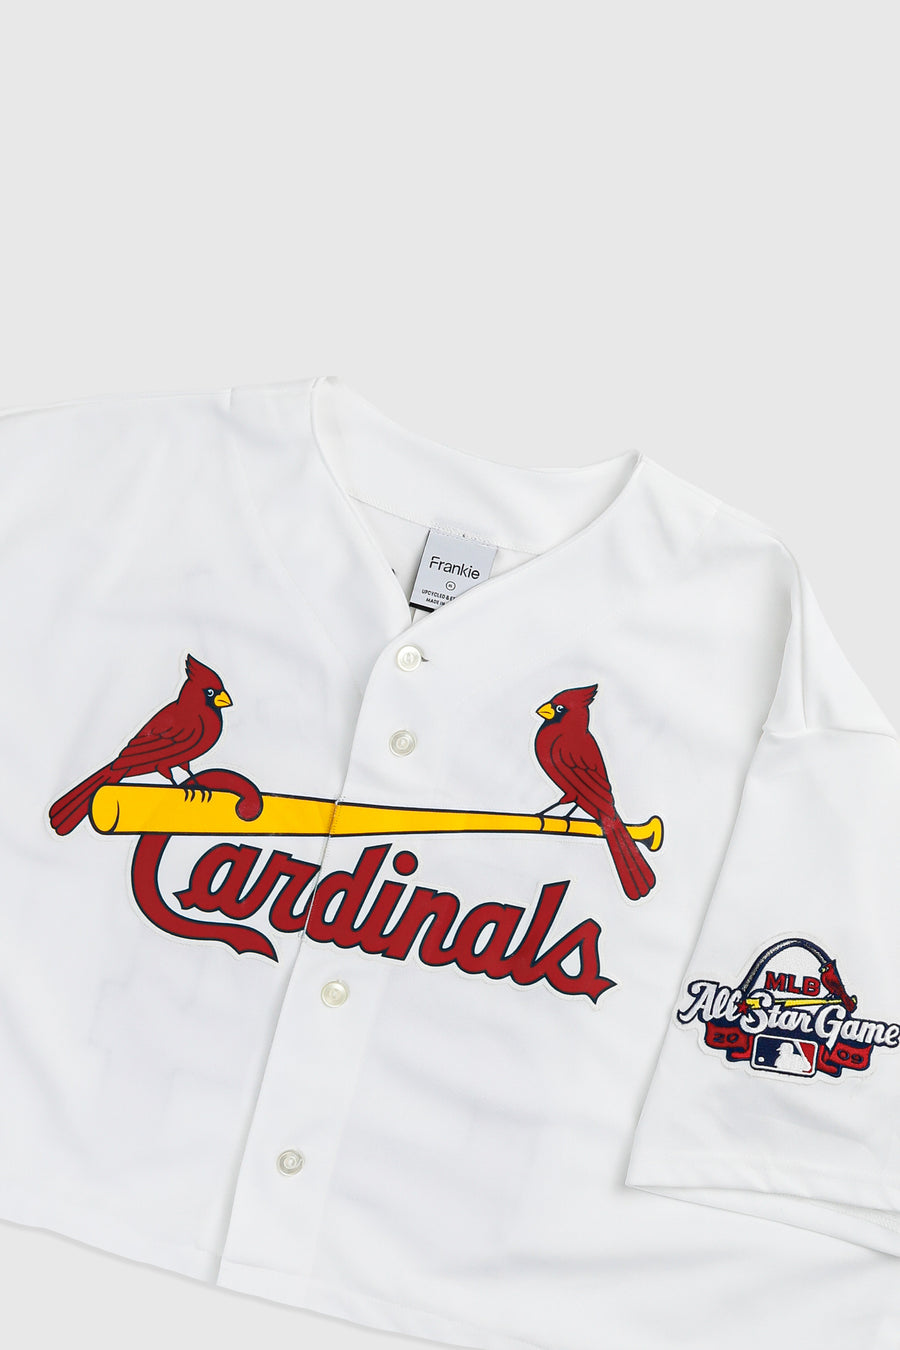 Rework Crop St. Louis Cardinals MLB Jersey - XL